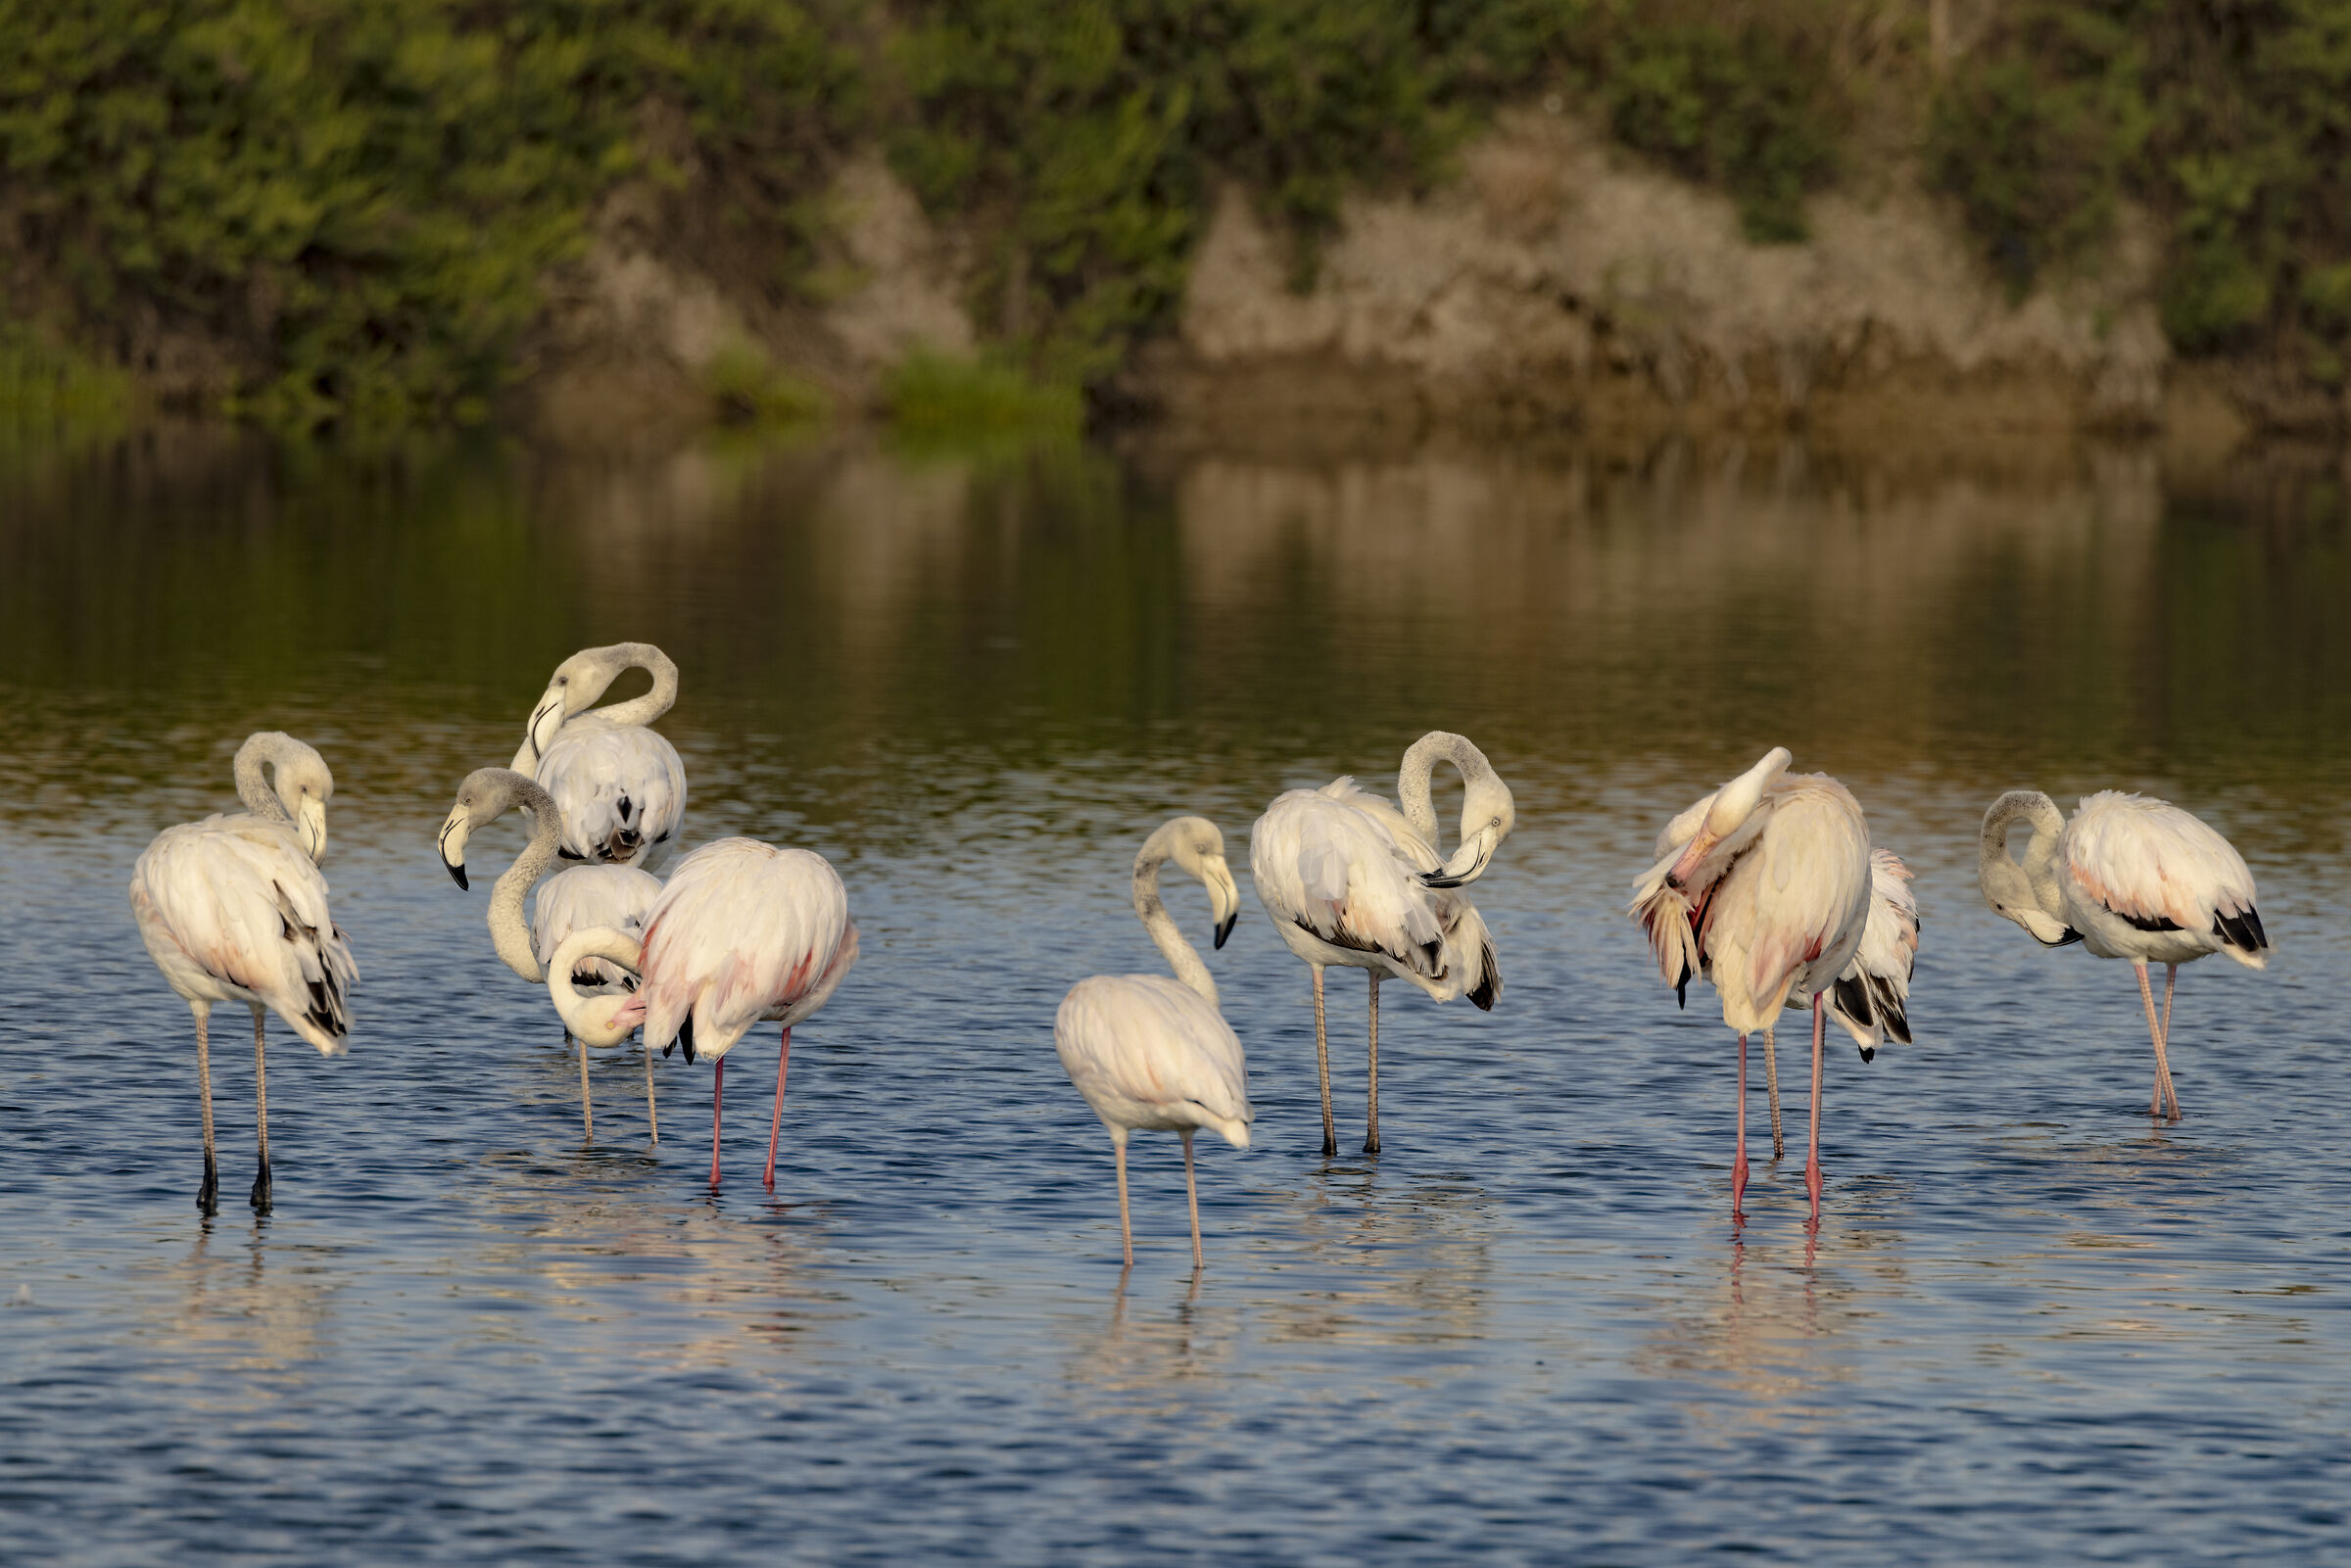 A flock of flamingos...